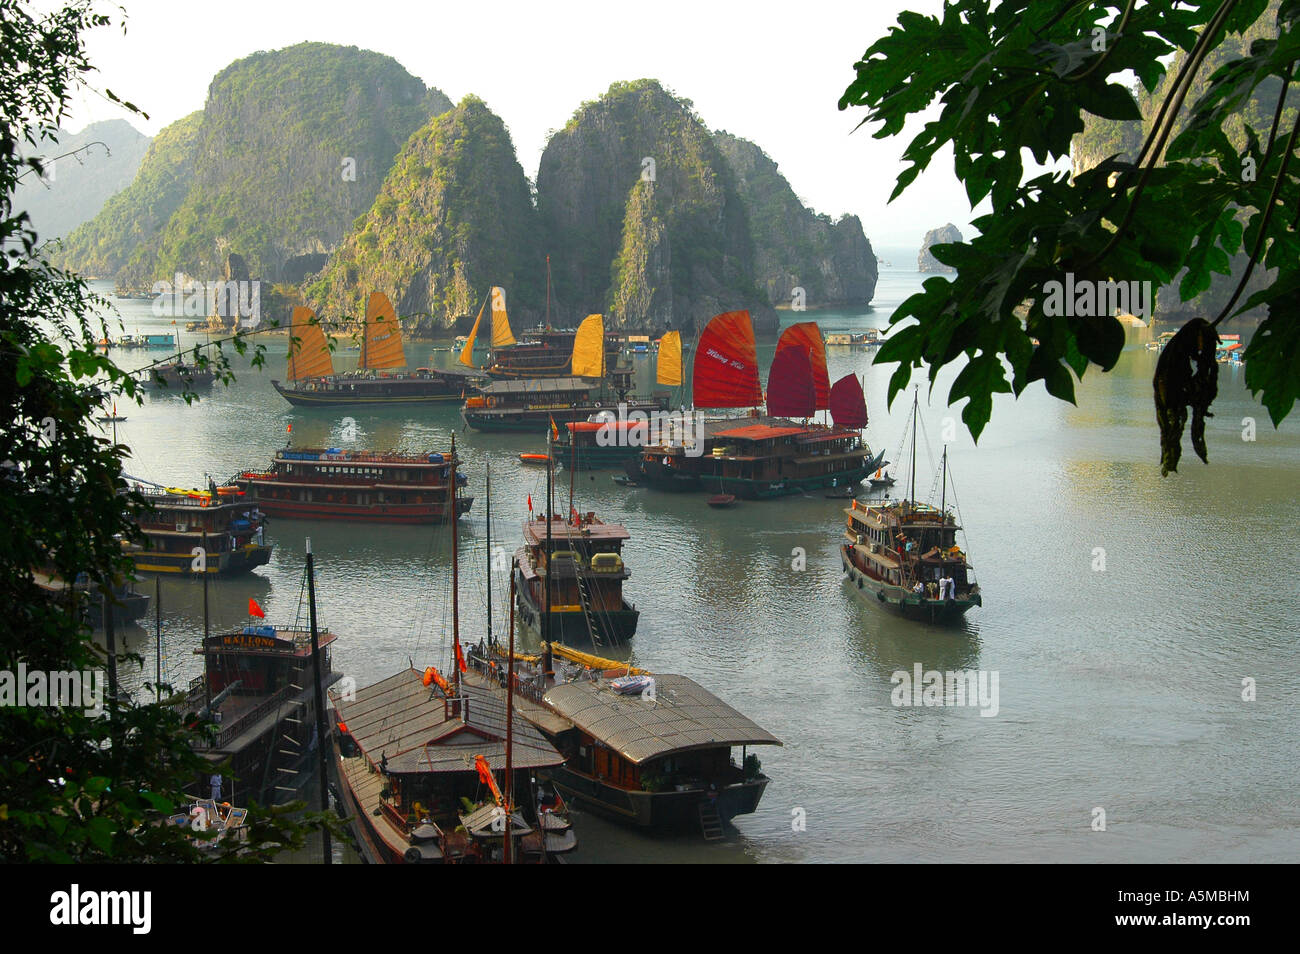 Dschunken Hafen Halong Bucht Vietnam Port of junks Halong Bay Asien asia Landschaft Natur draußen menschenleer Gelände Gegend La Stock Photo